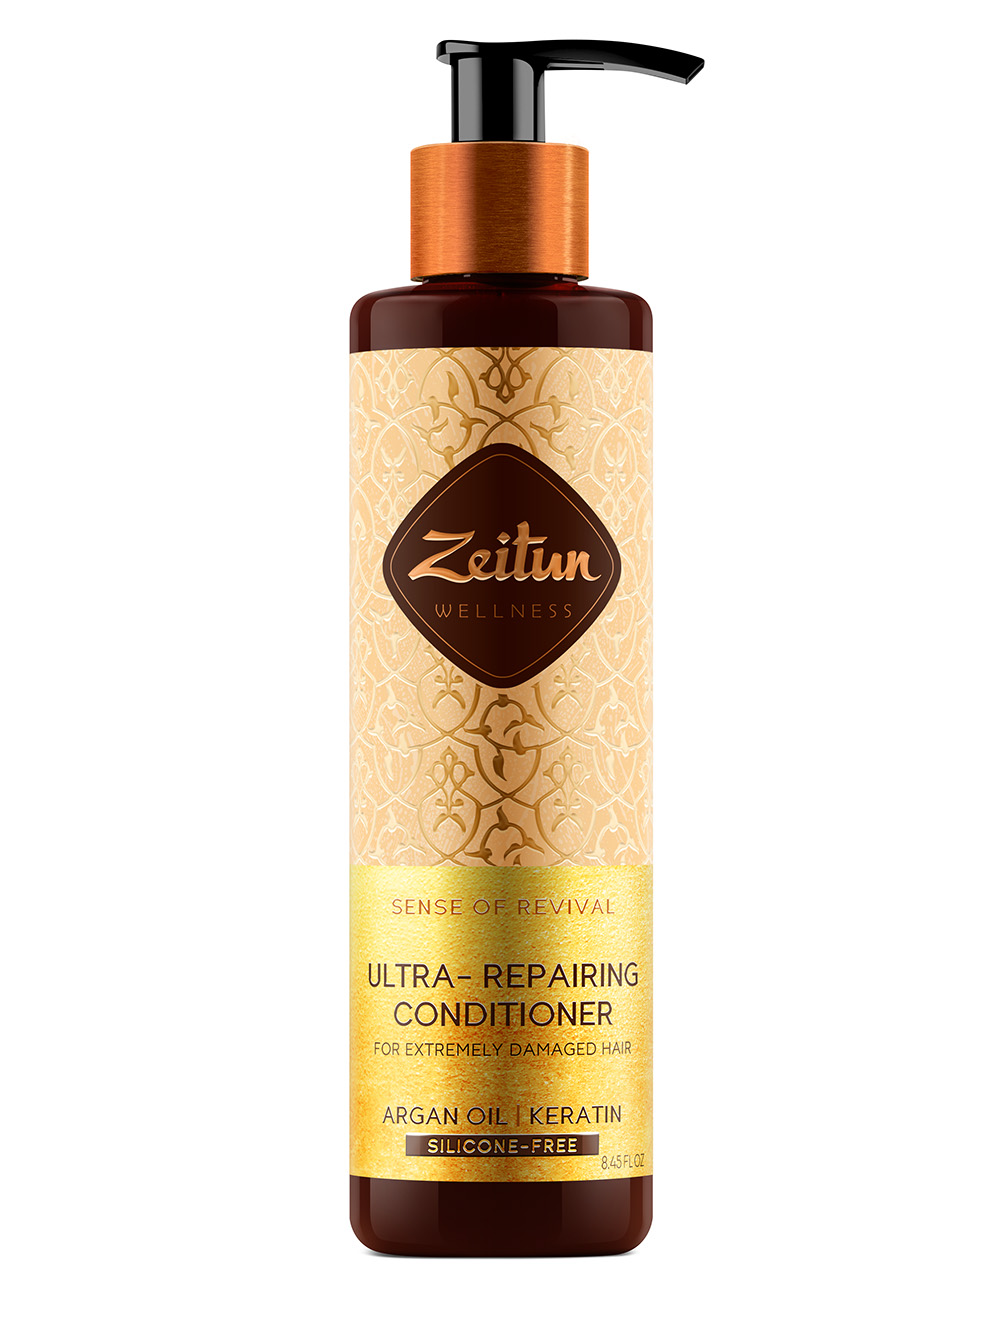 Zeitun Бальзам-кондиционер для поврежденных волос Ритуал восстановления, 250 мл (Zeitun, Wellness) цена и фото